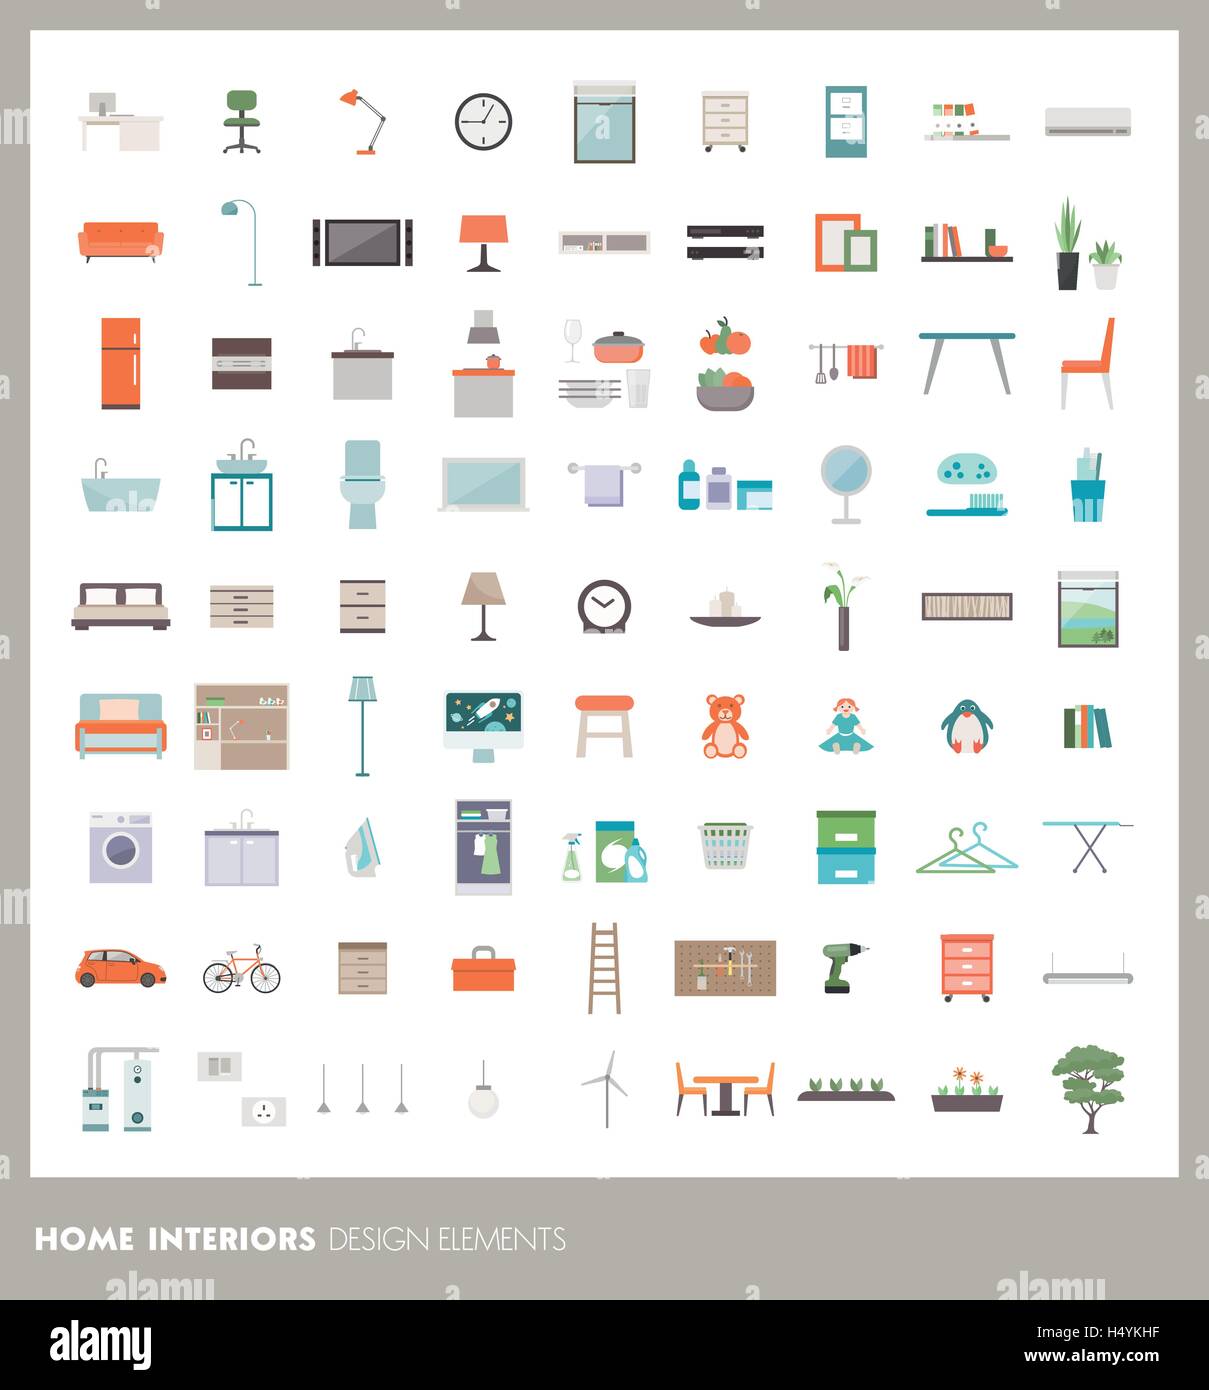 Casa habitación iconos y elementos de diseño de interiores: muebles, objetos y electrodomésticos Ilustración del Vector